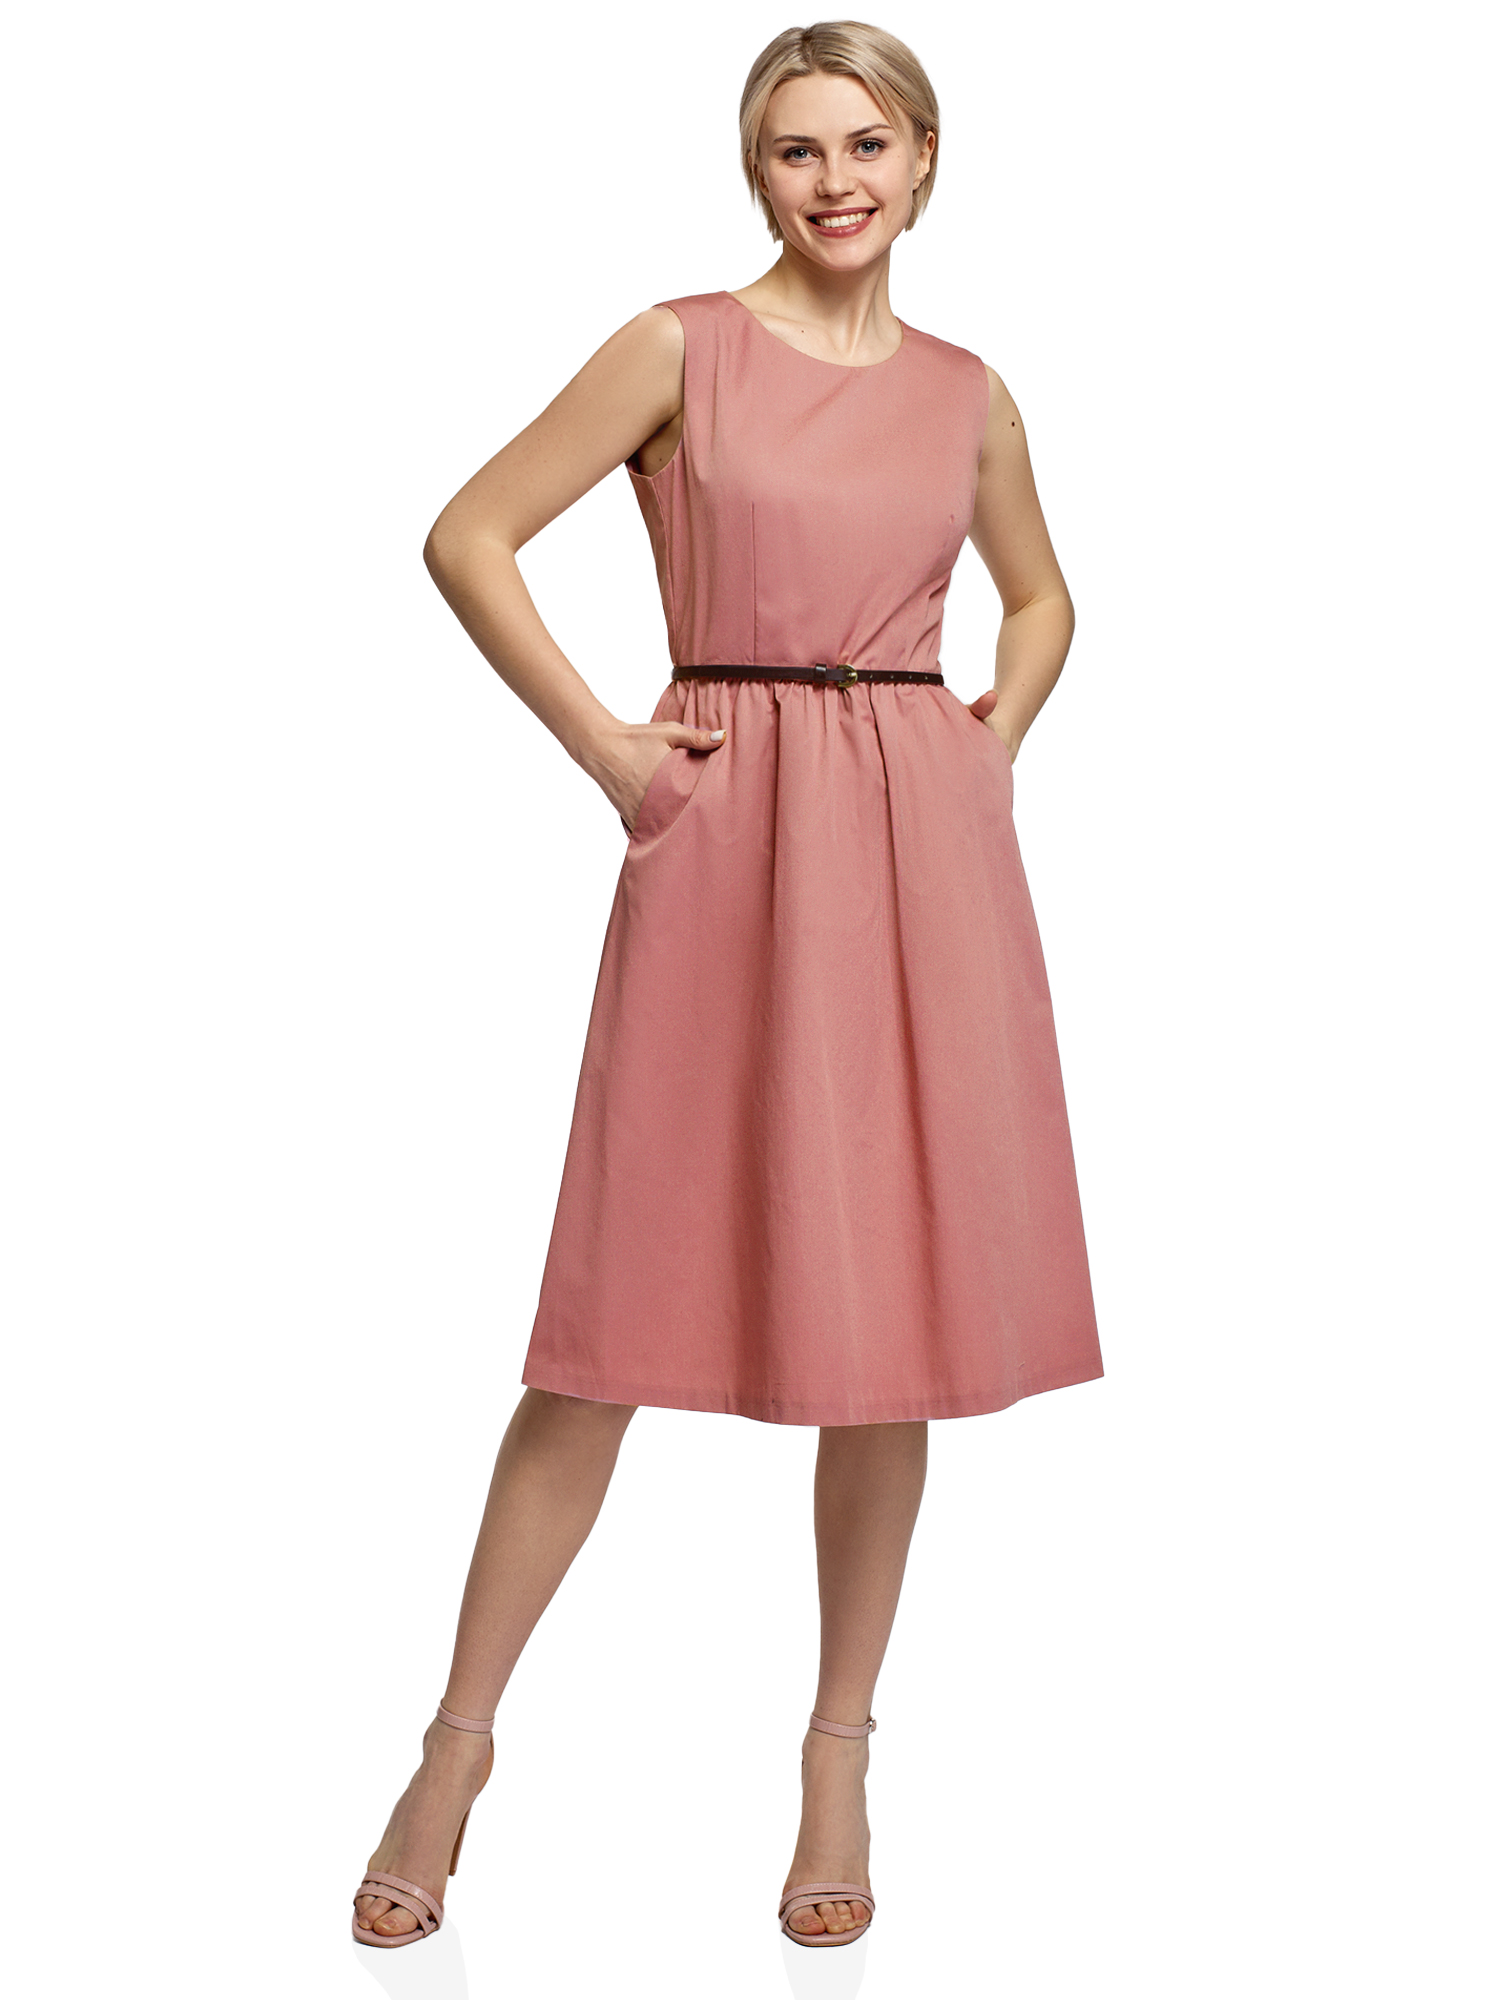 Платье женское oodji 12C13008-1 розовое 38/170 - купить в oodji, цена на Мегамаркет